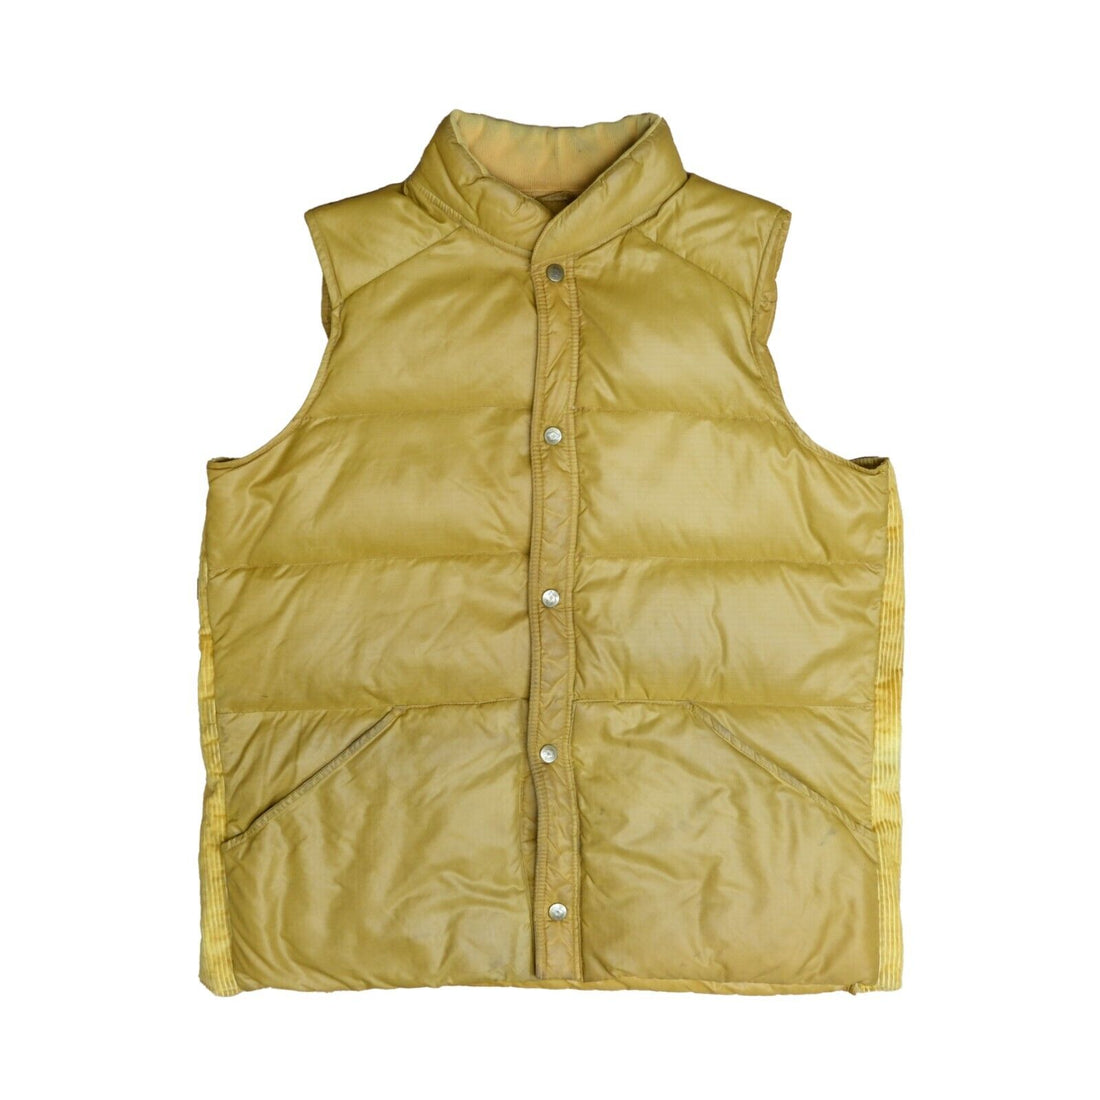 Vintage Eddie Bauer Puffer Vest Jacket Size Medium Goose Down Insulated